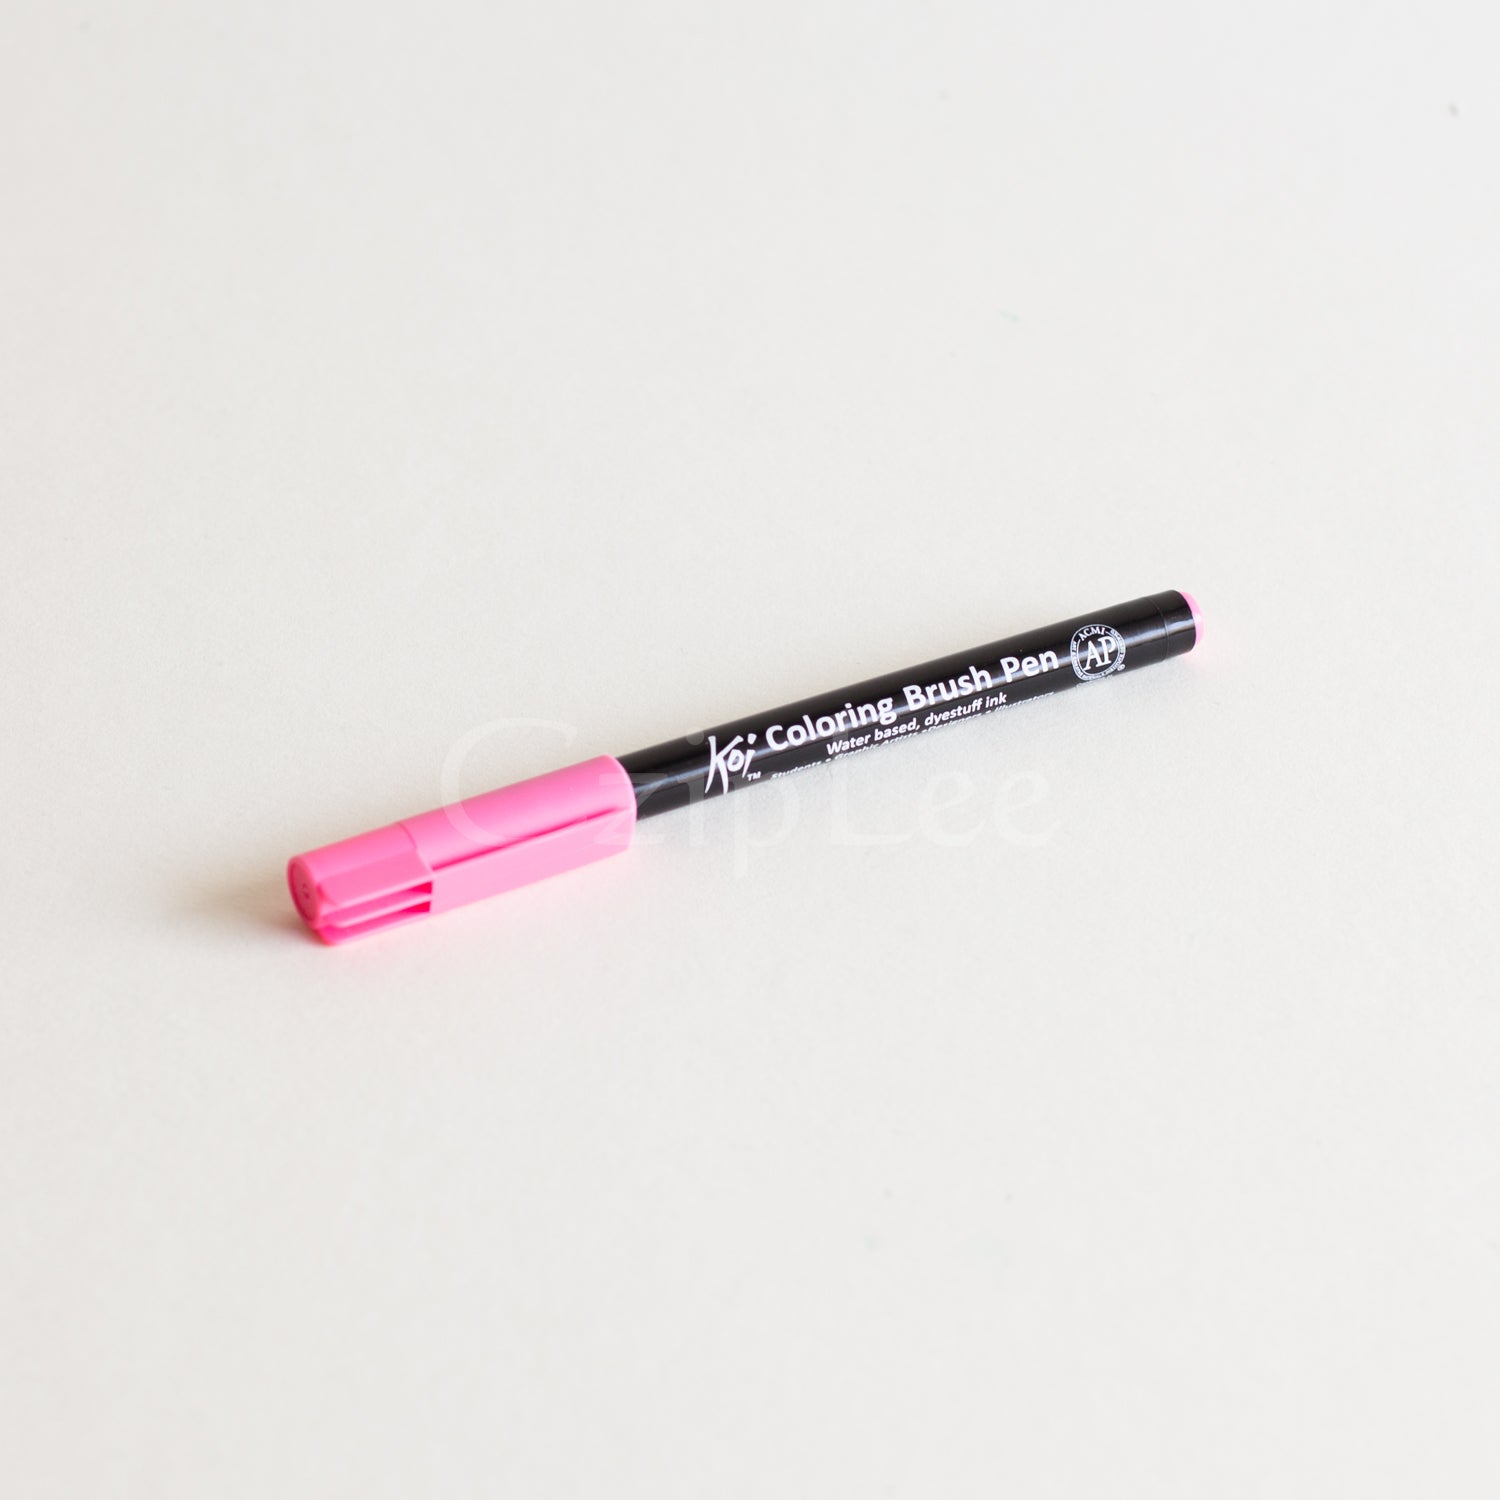 SAKURA Koi Brush Pen #421 Magenta Pink